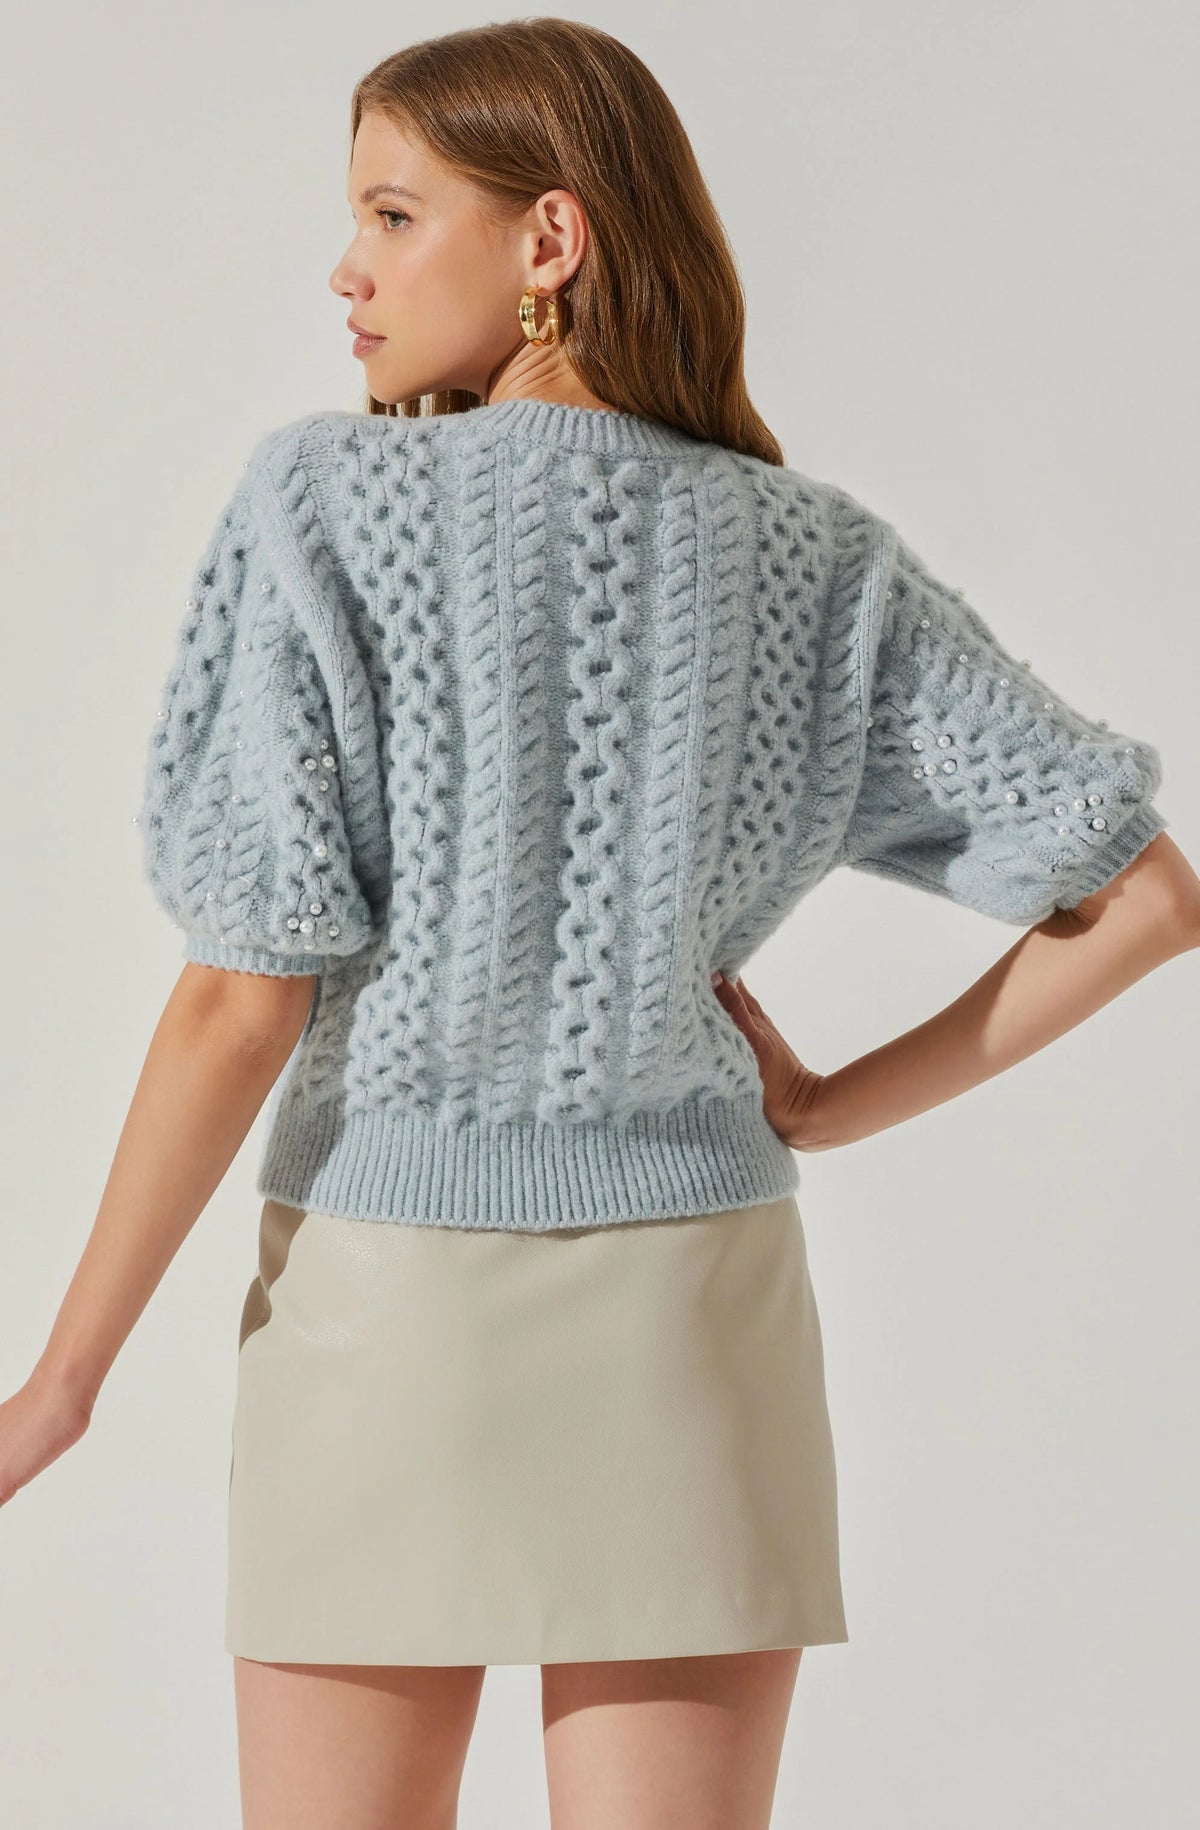 Koami Embellished Puff Sleeve Sweater